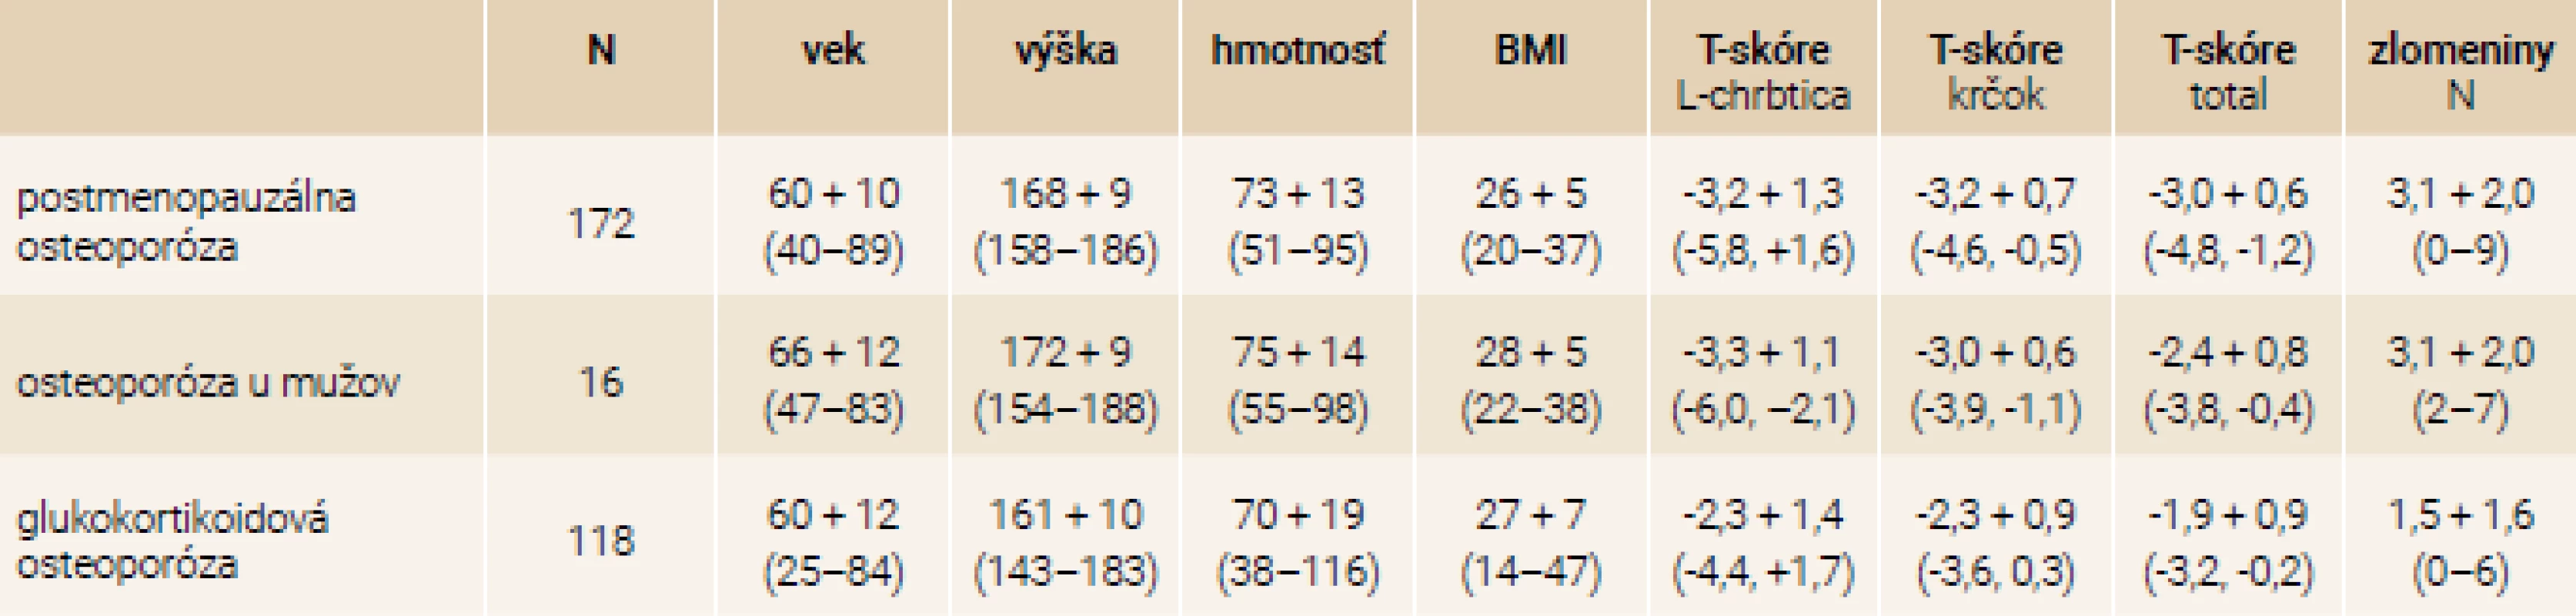 Antropometrické charakteristiky súboru podľa typu osteoporózy: priemer + SD (min–max)